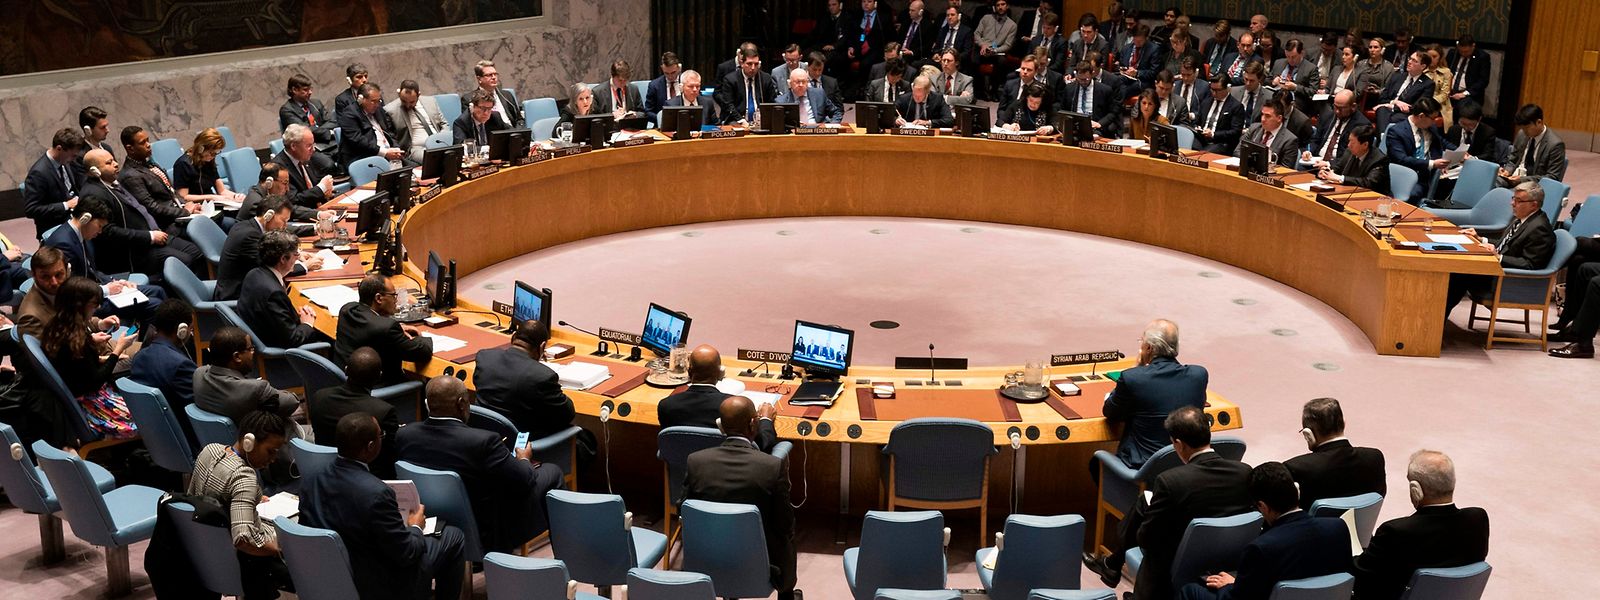 Die britische UN-Botschafterin nannte das dreifache Scheitern einen "traurigen Tag" für den UN-Sicherheitsrat. 